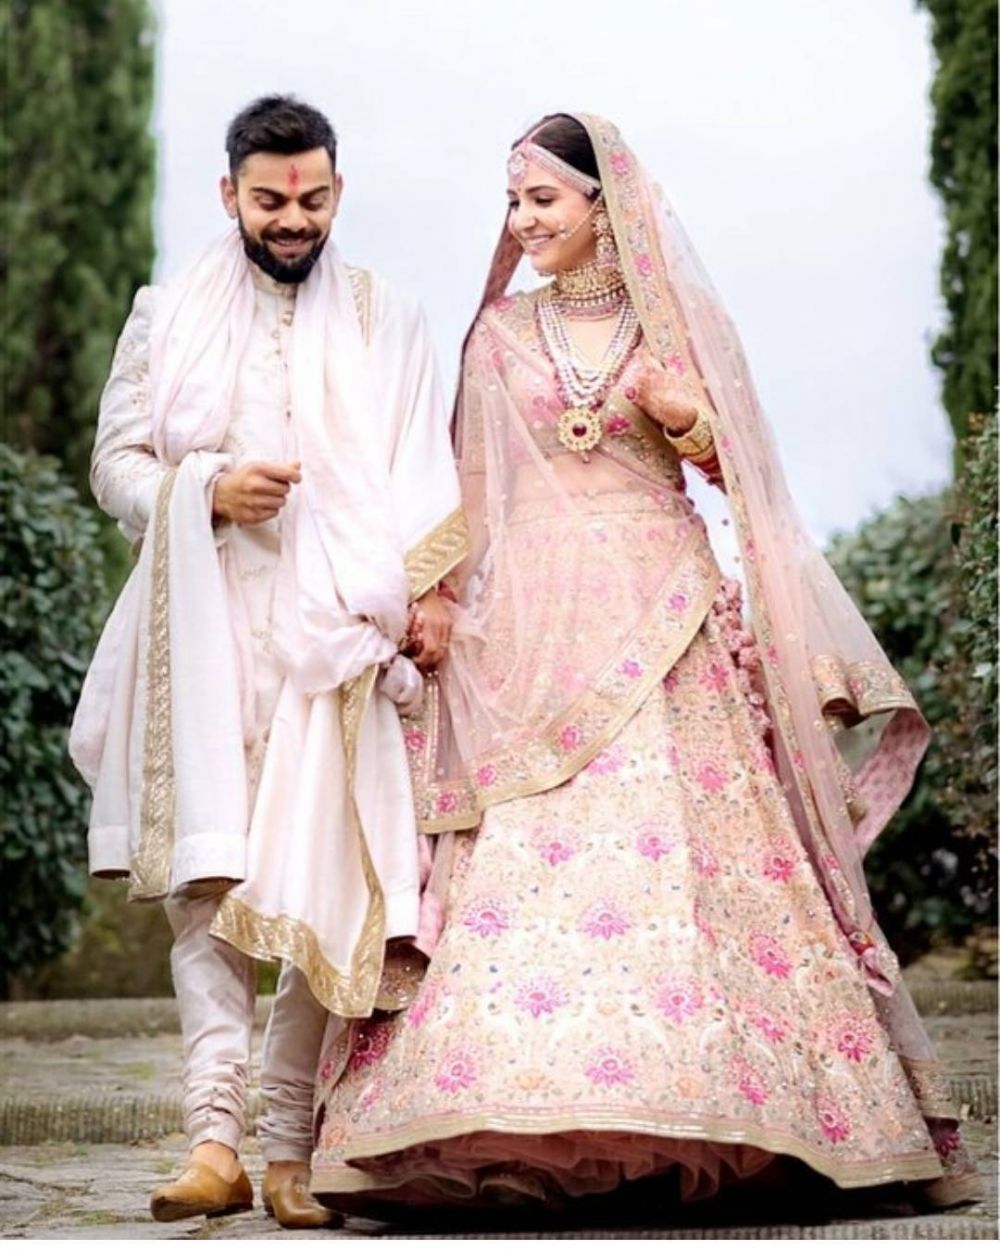 Gaun pengantin 11 seleb Bollywood, milik Katrina Kaif berhias kristal